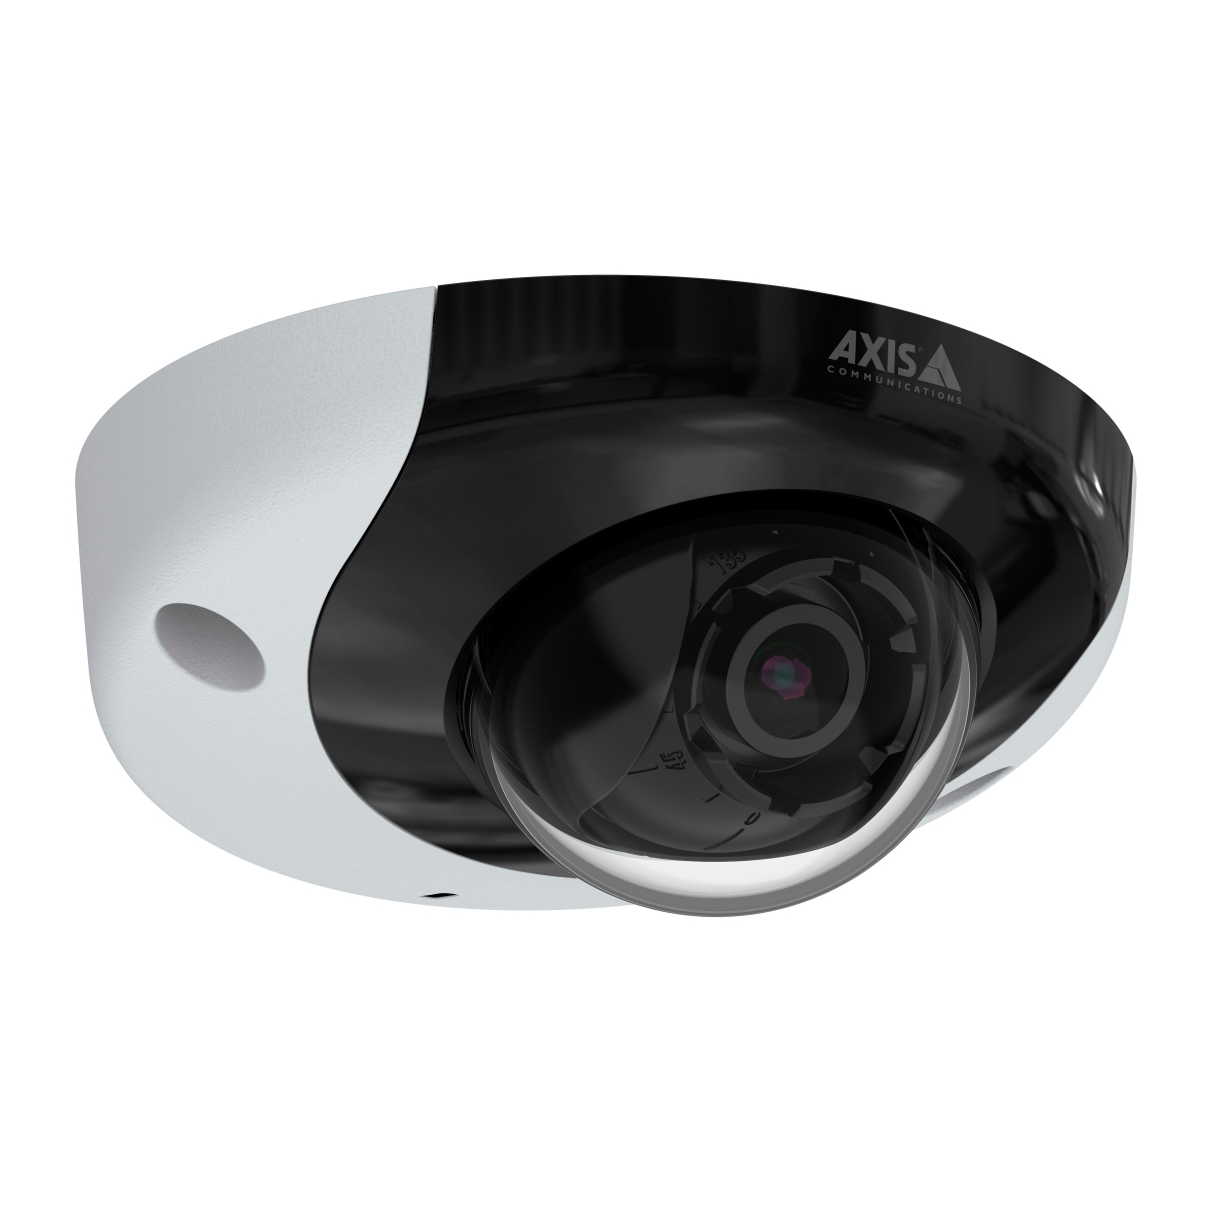 IP-камера видеонаблюдения Axis P3935-LR